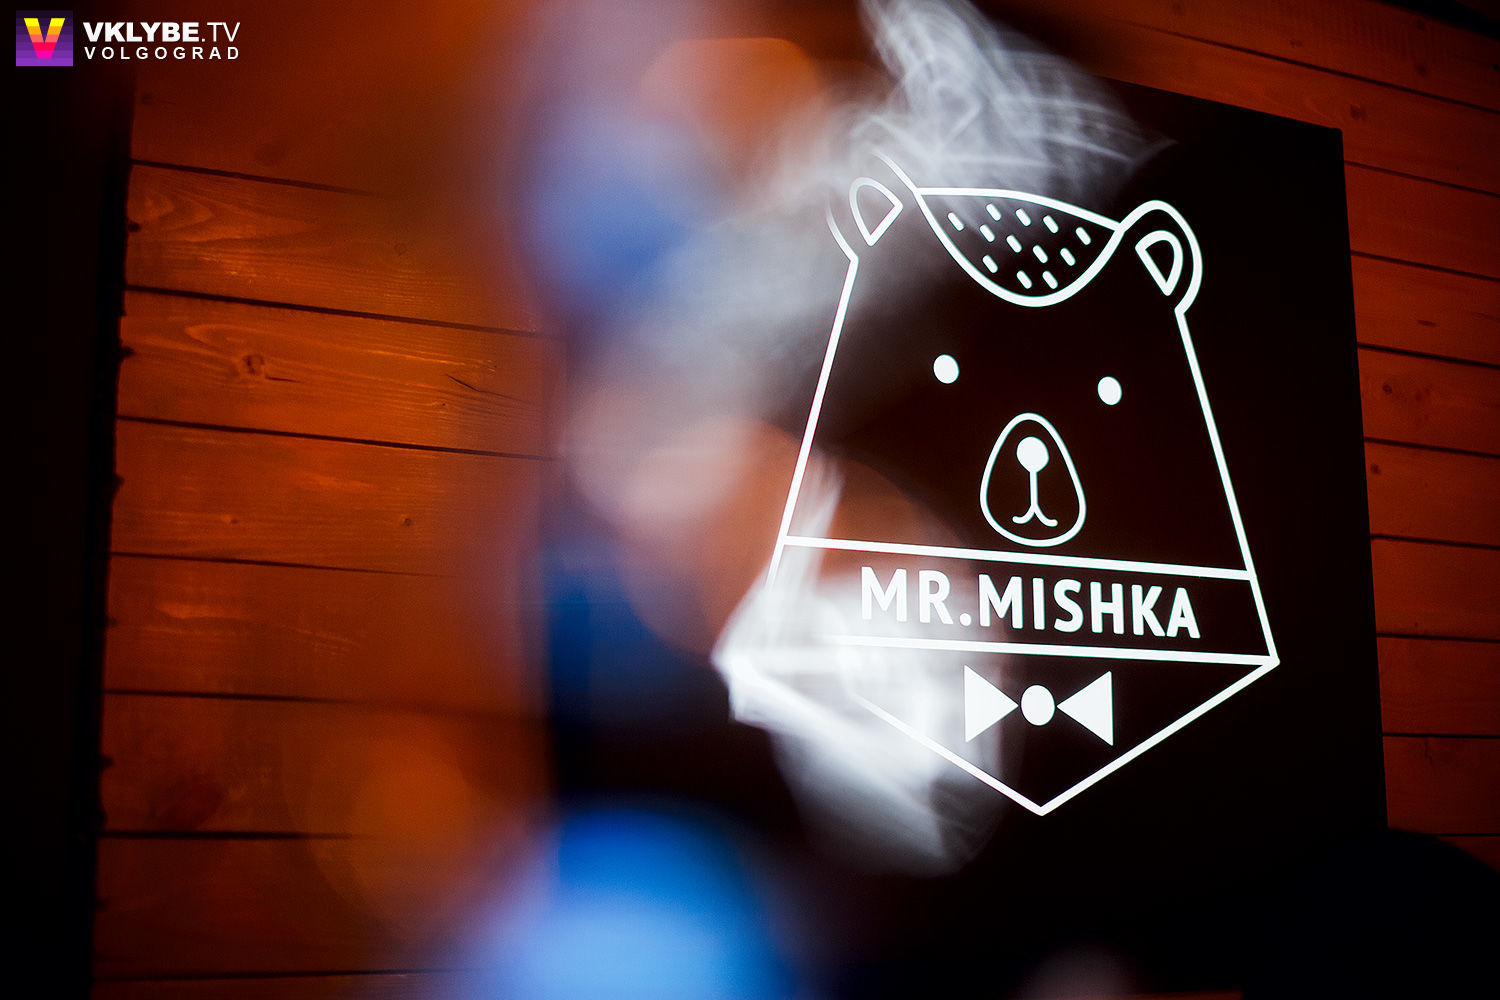 Mr Mishka. Msk_Mishka. Mishka Group LLC.